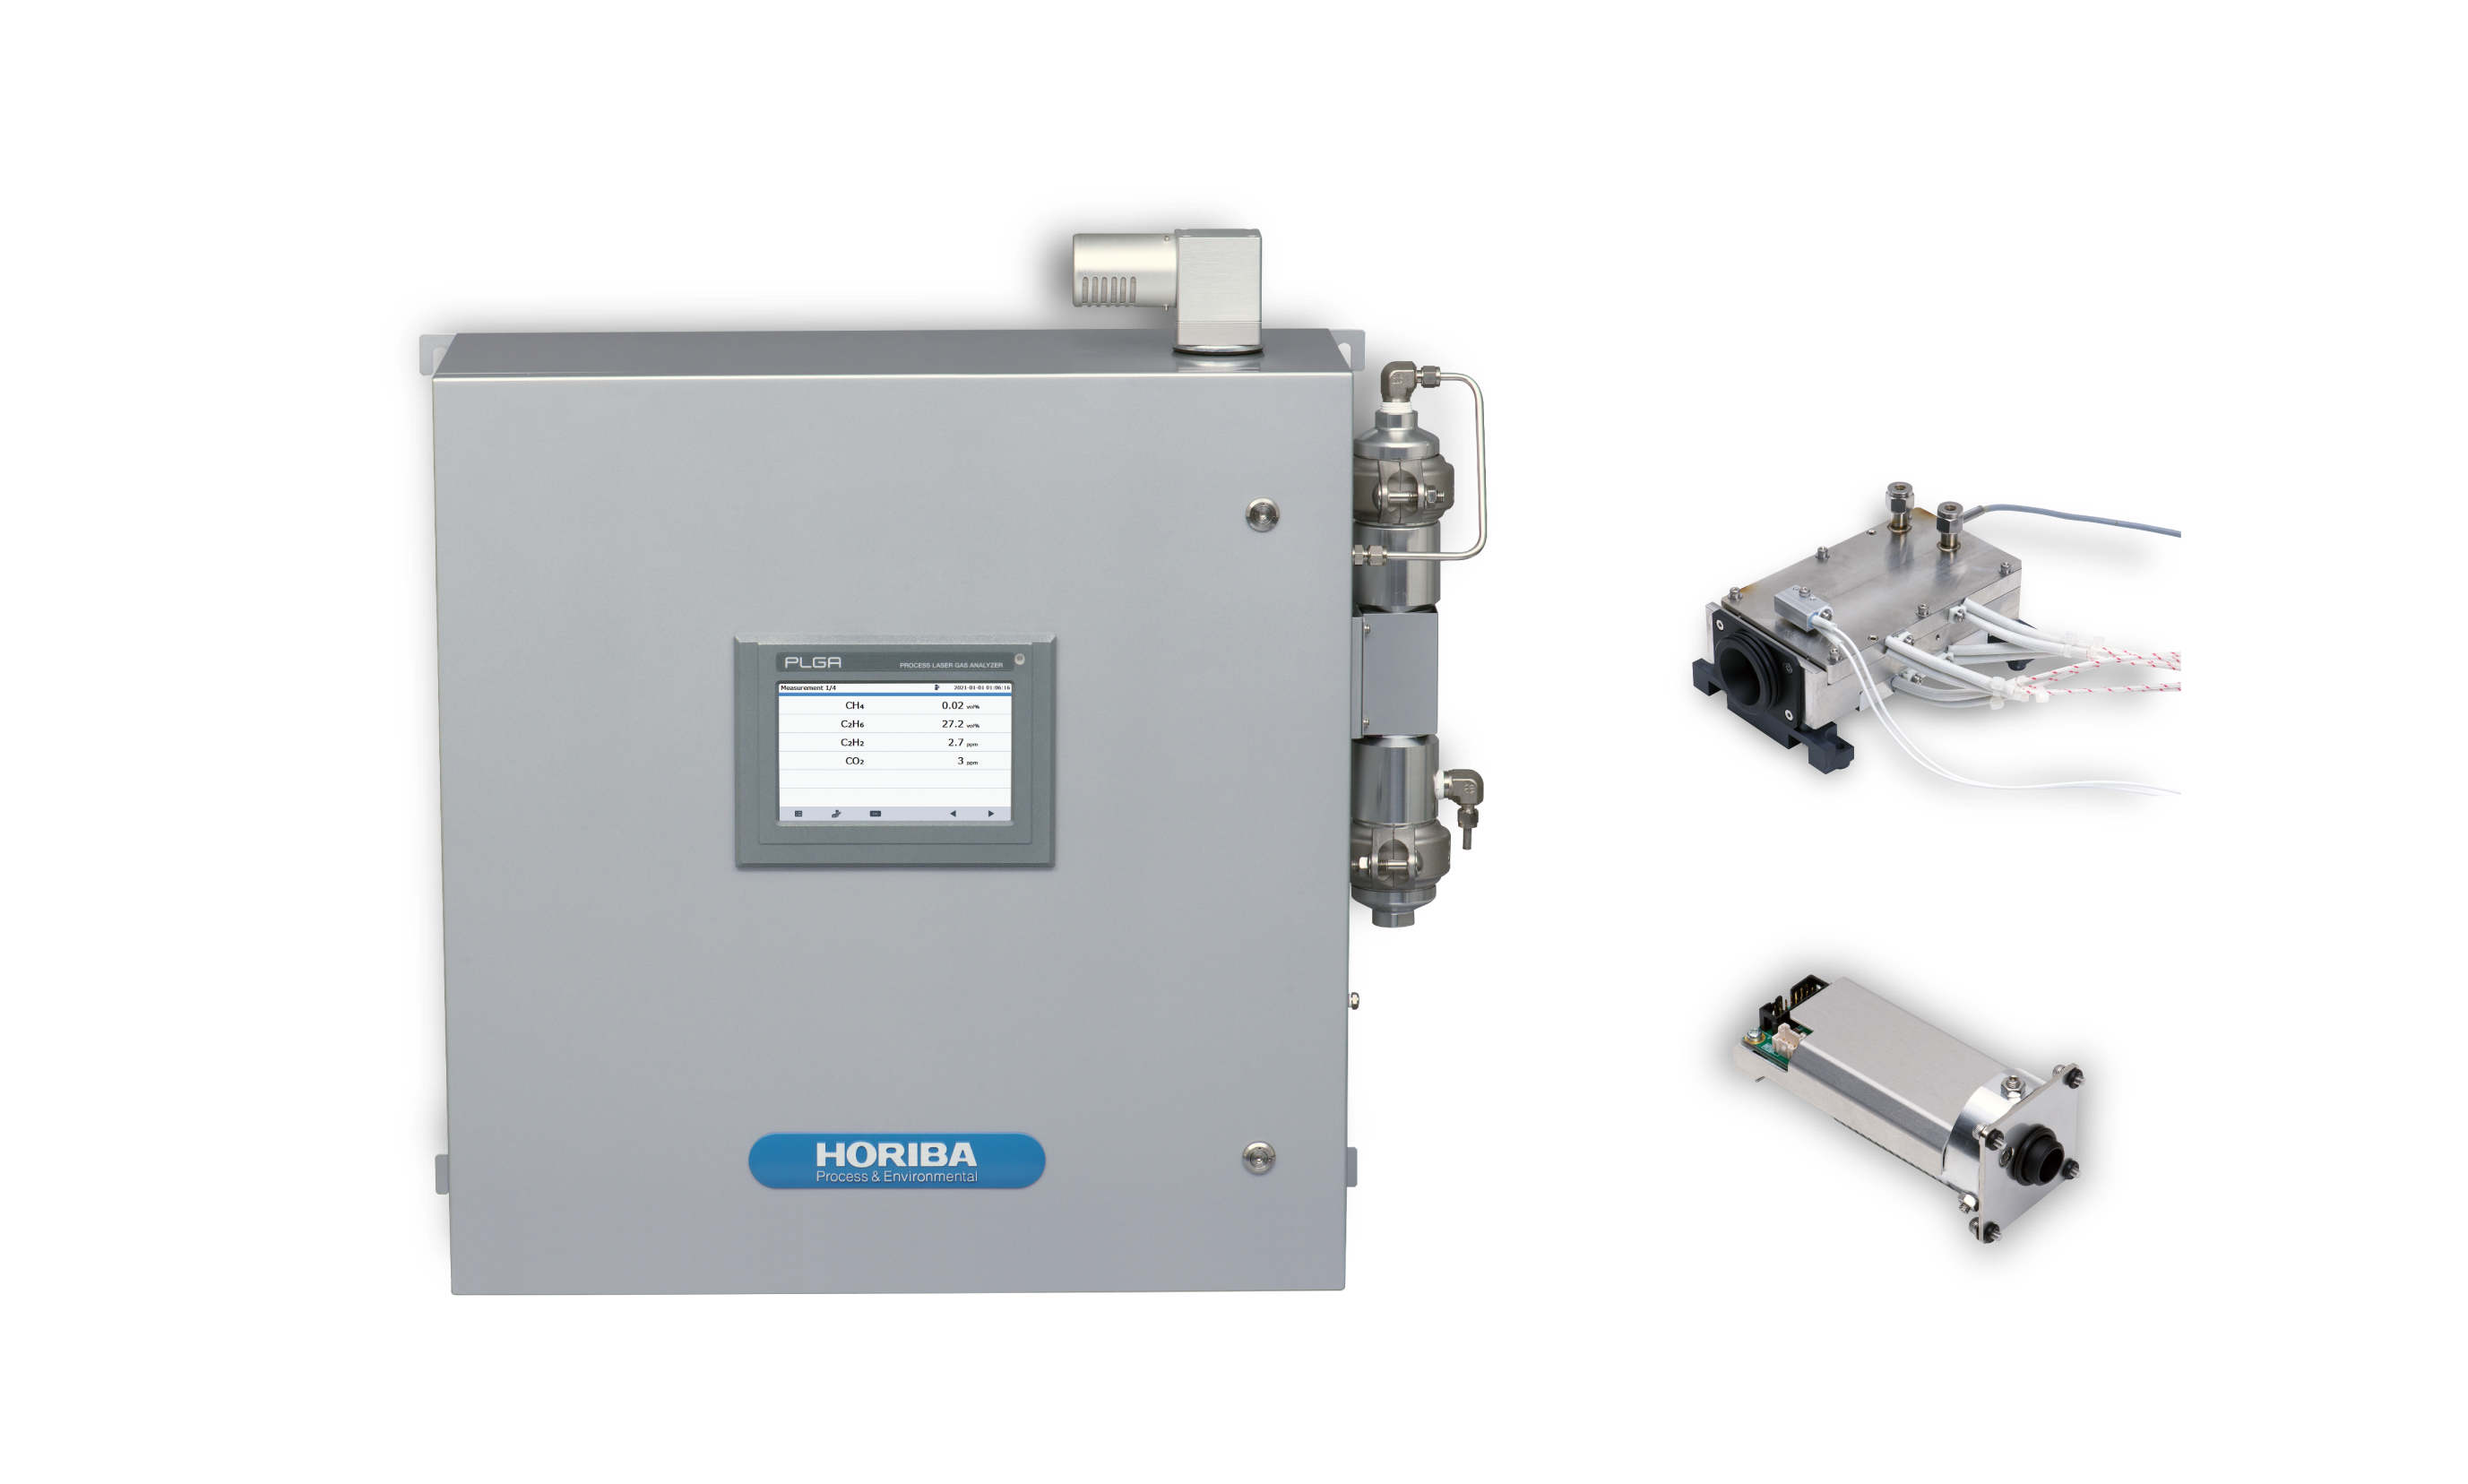 HORIBA PLGA-1000 Process Gas Analyzer with IRLAM